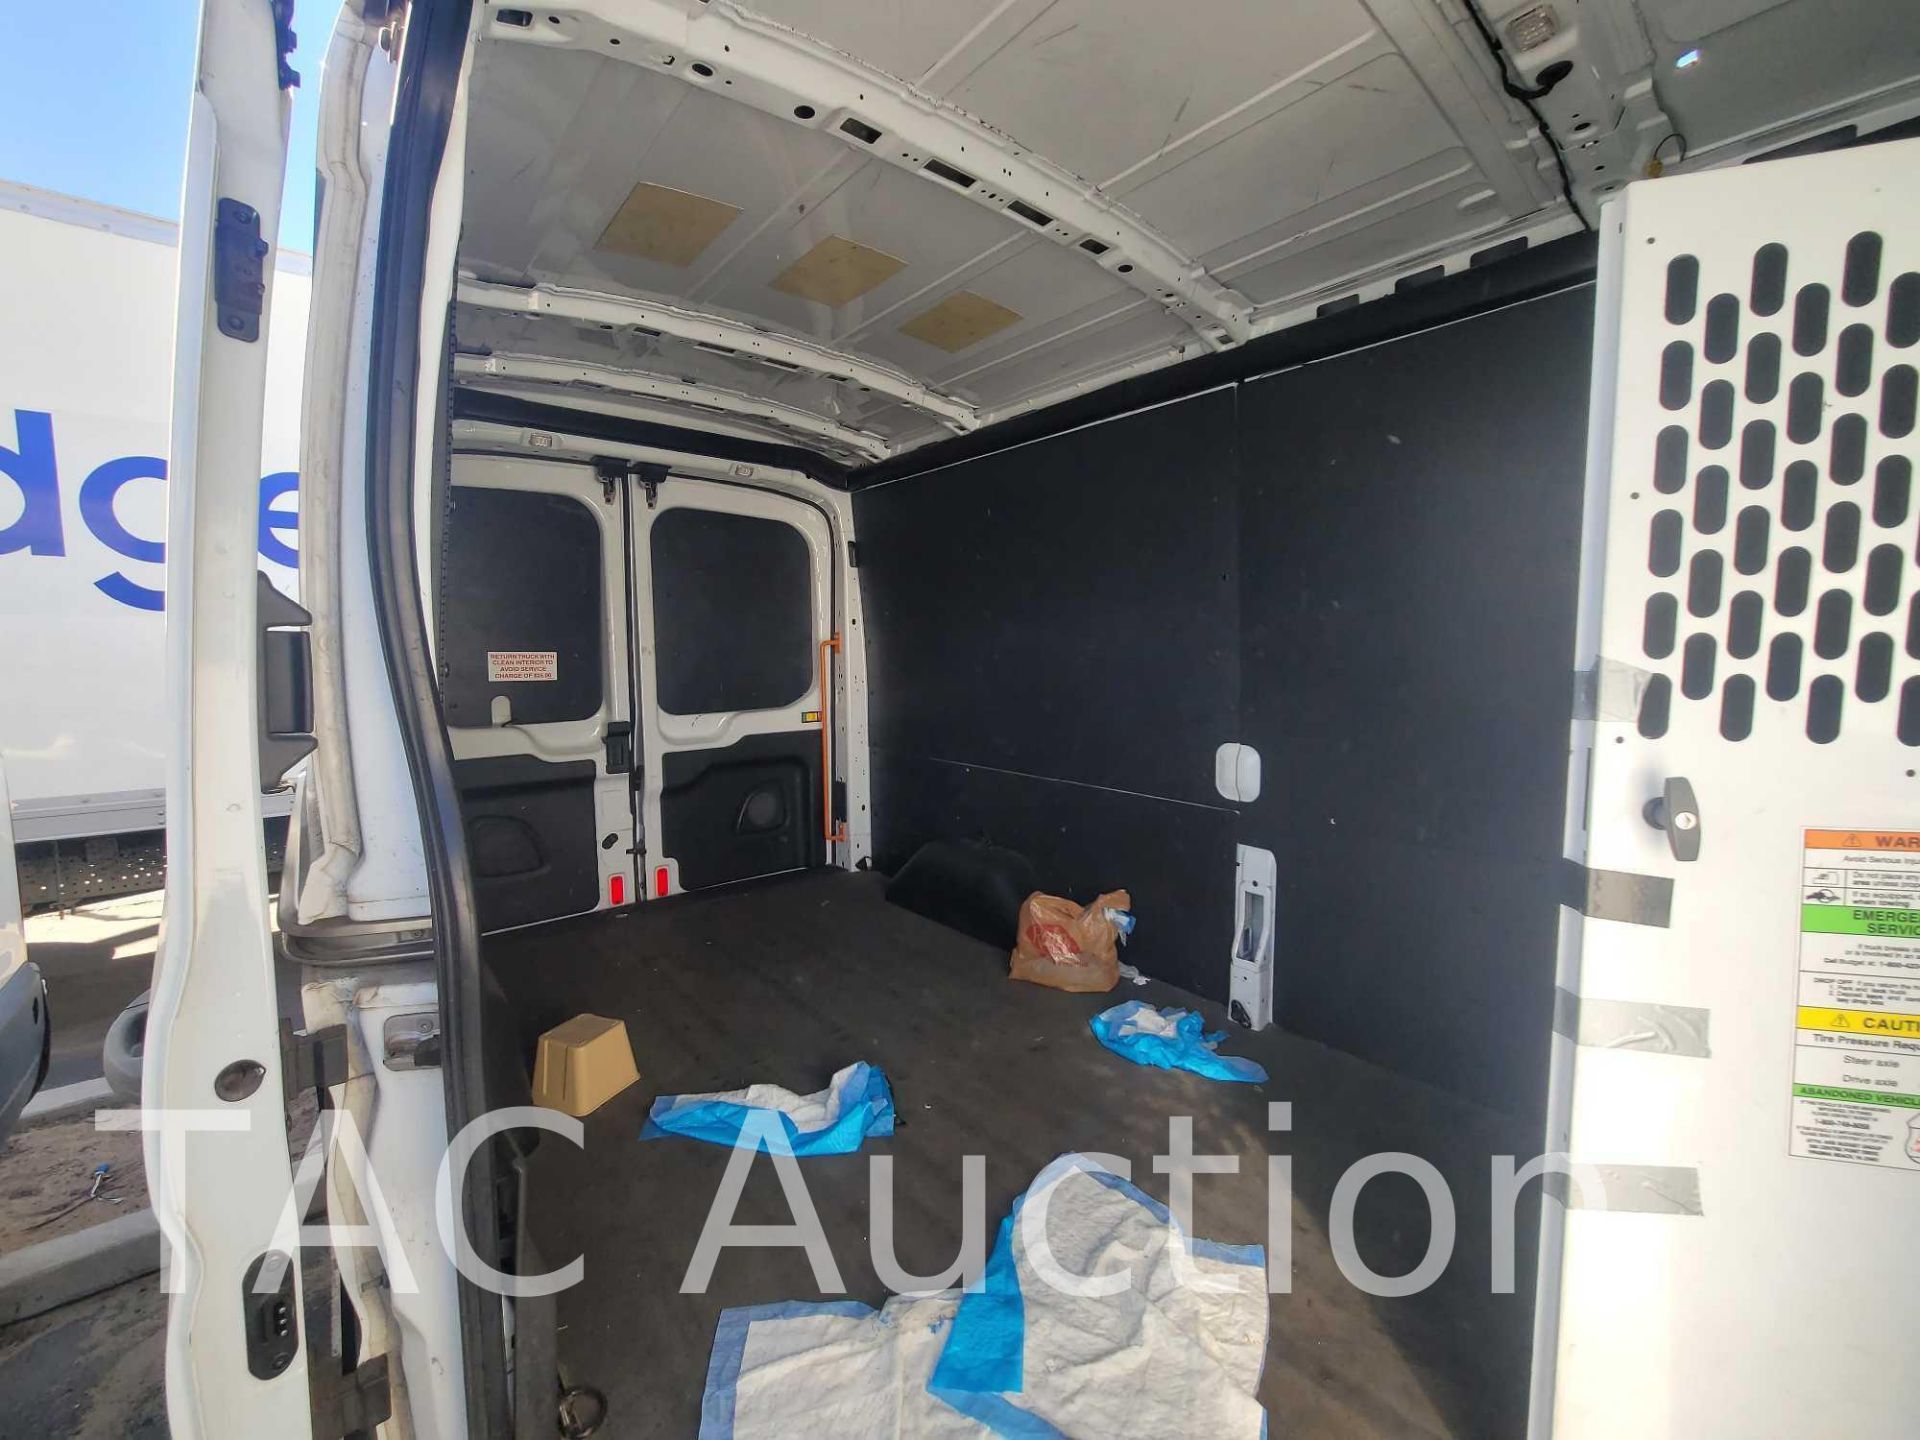 2019 Ford Transit 150 Cargo Van - Image 19 of 44